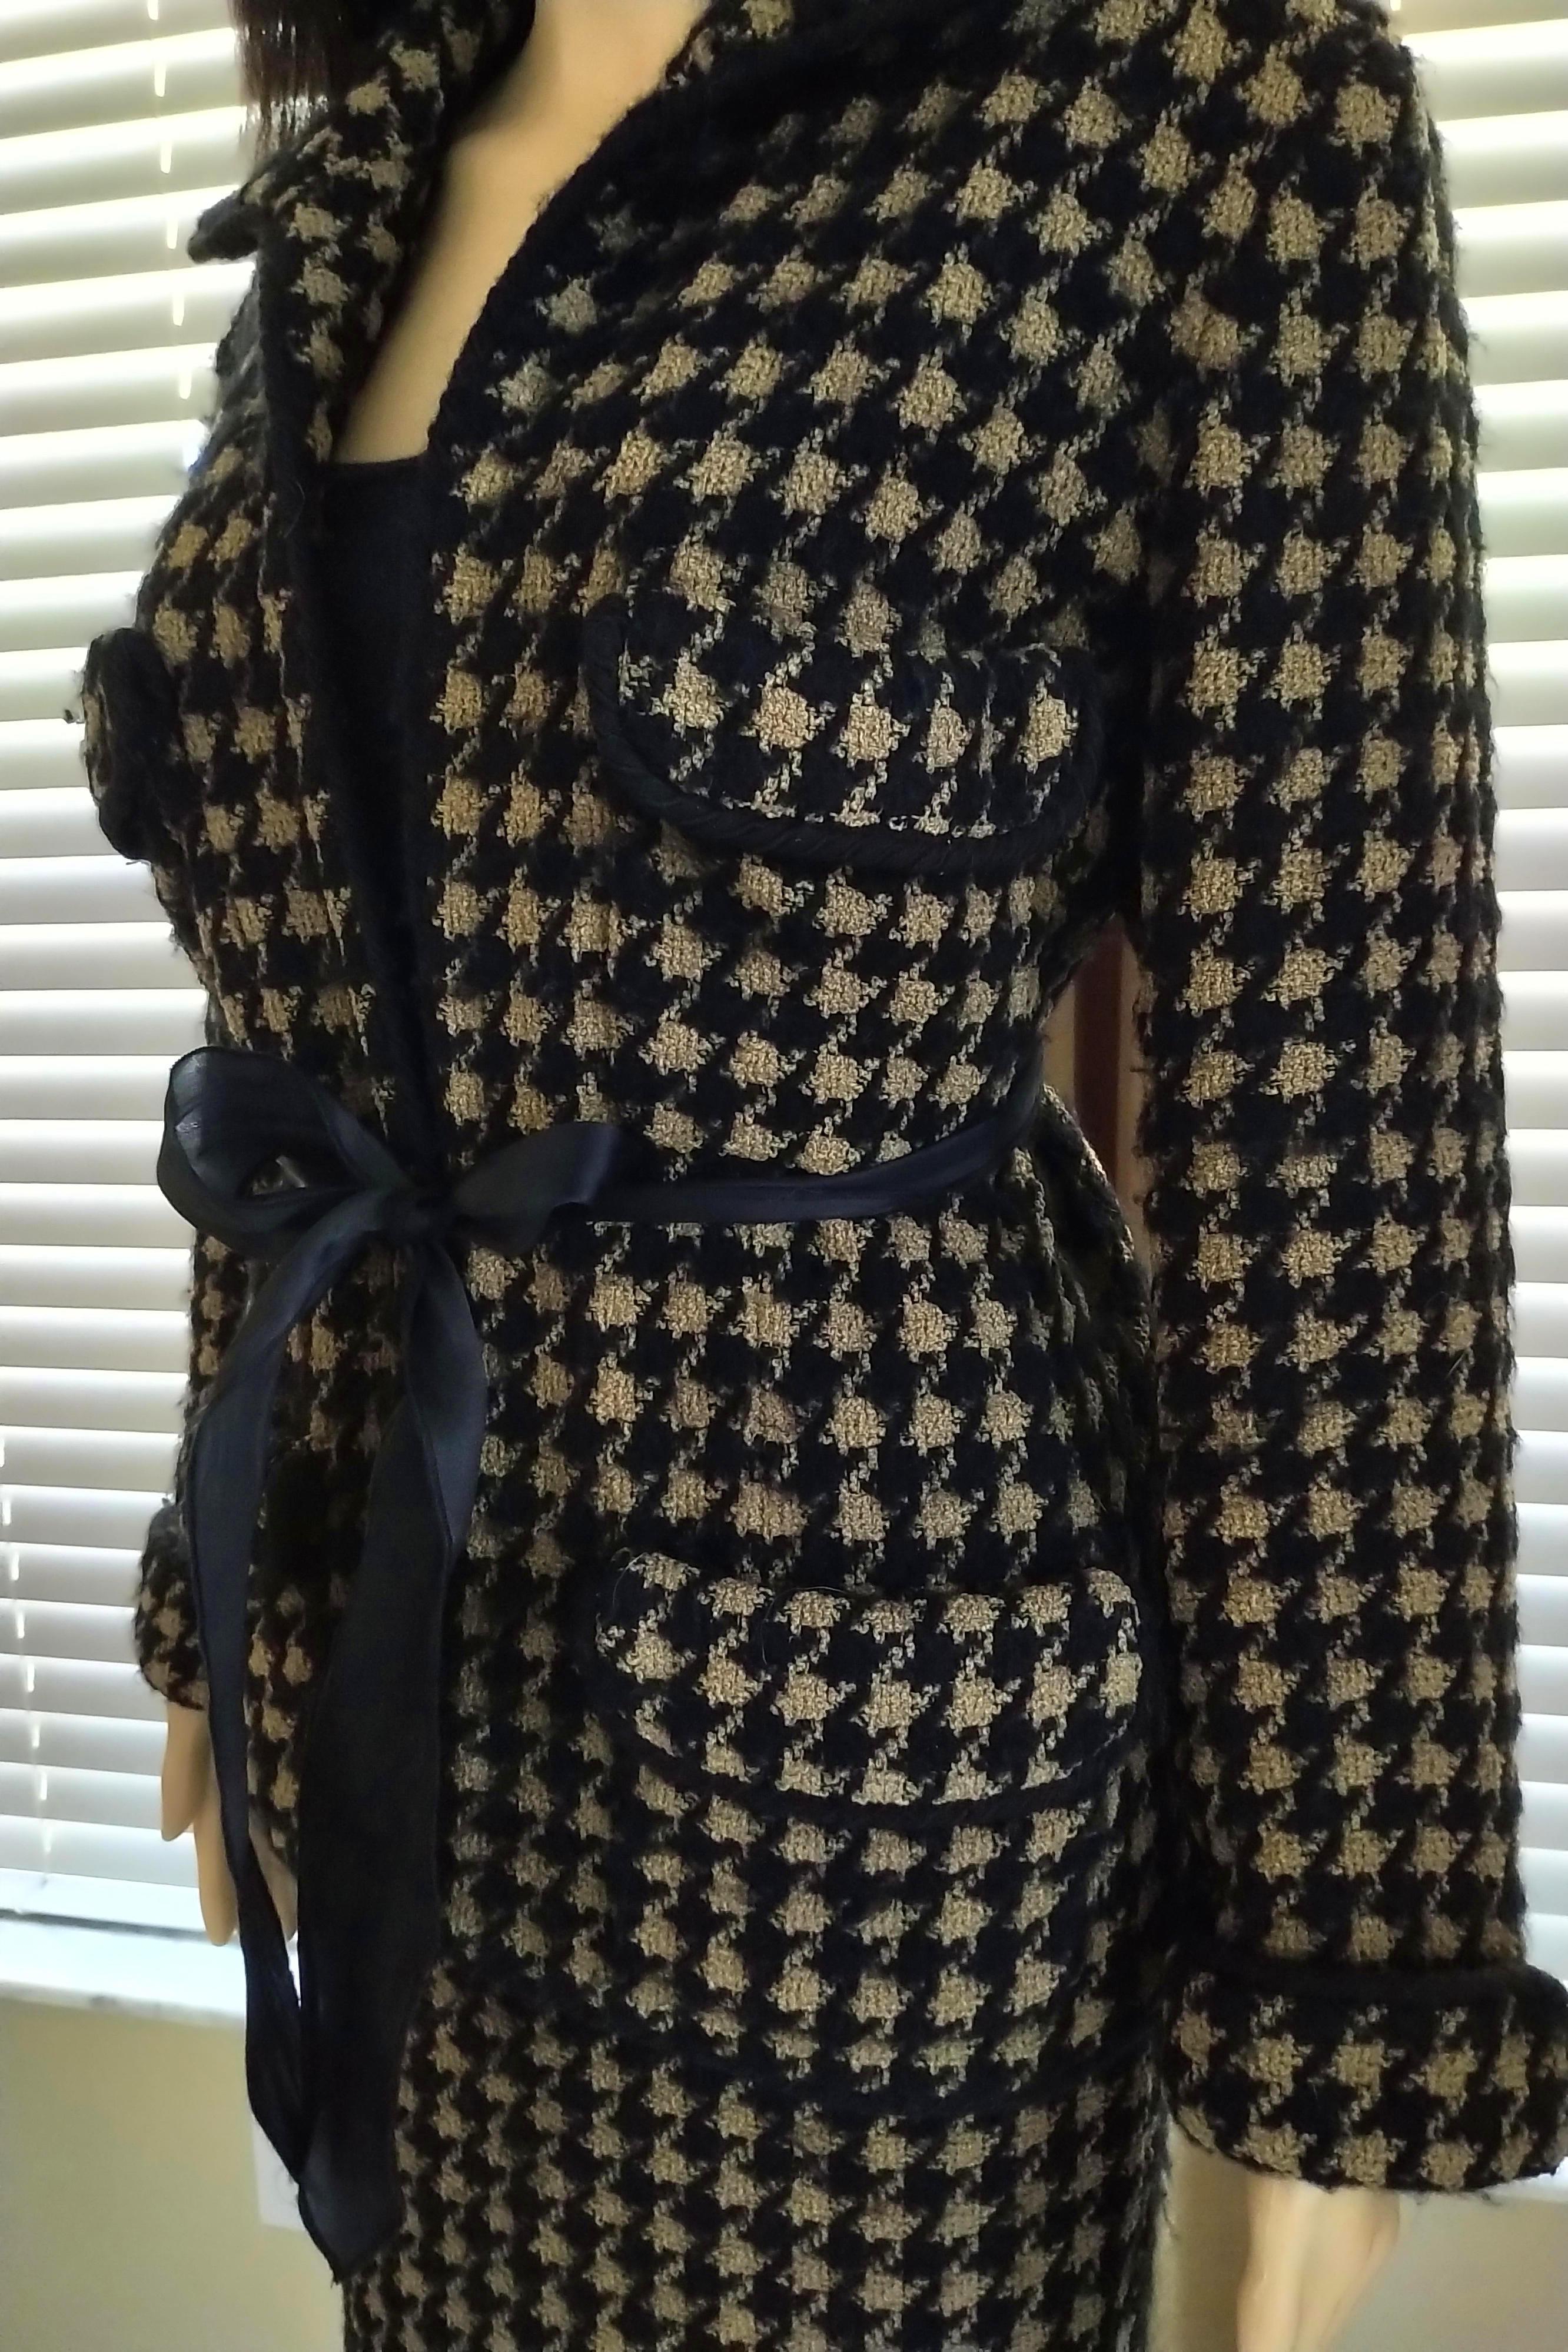 Vintage Chanel 1990's Black & Tan Fantasy Tweed Jacket Skirt Suit FR 40/ US 8 For Sale 8